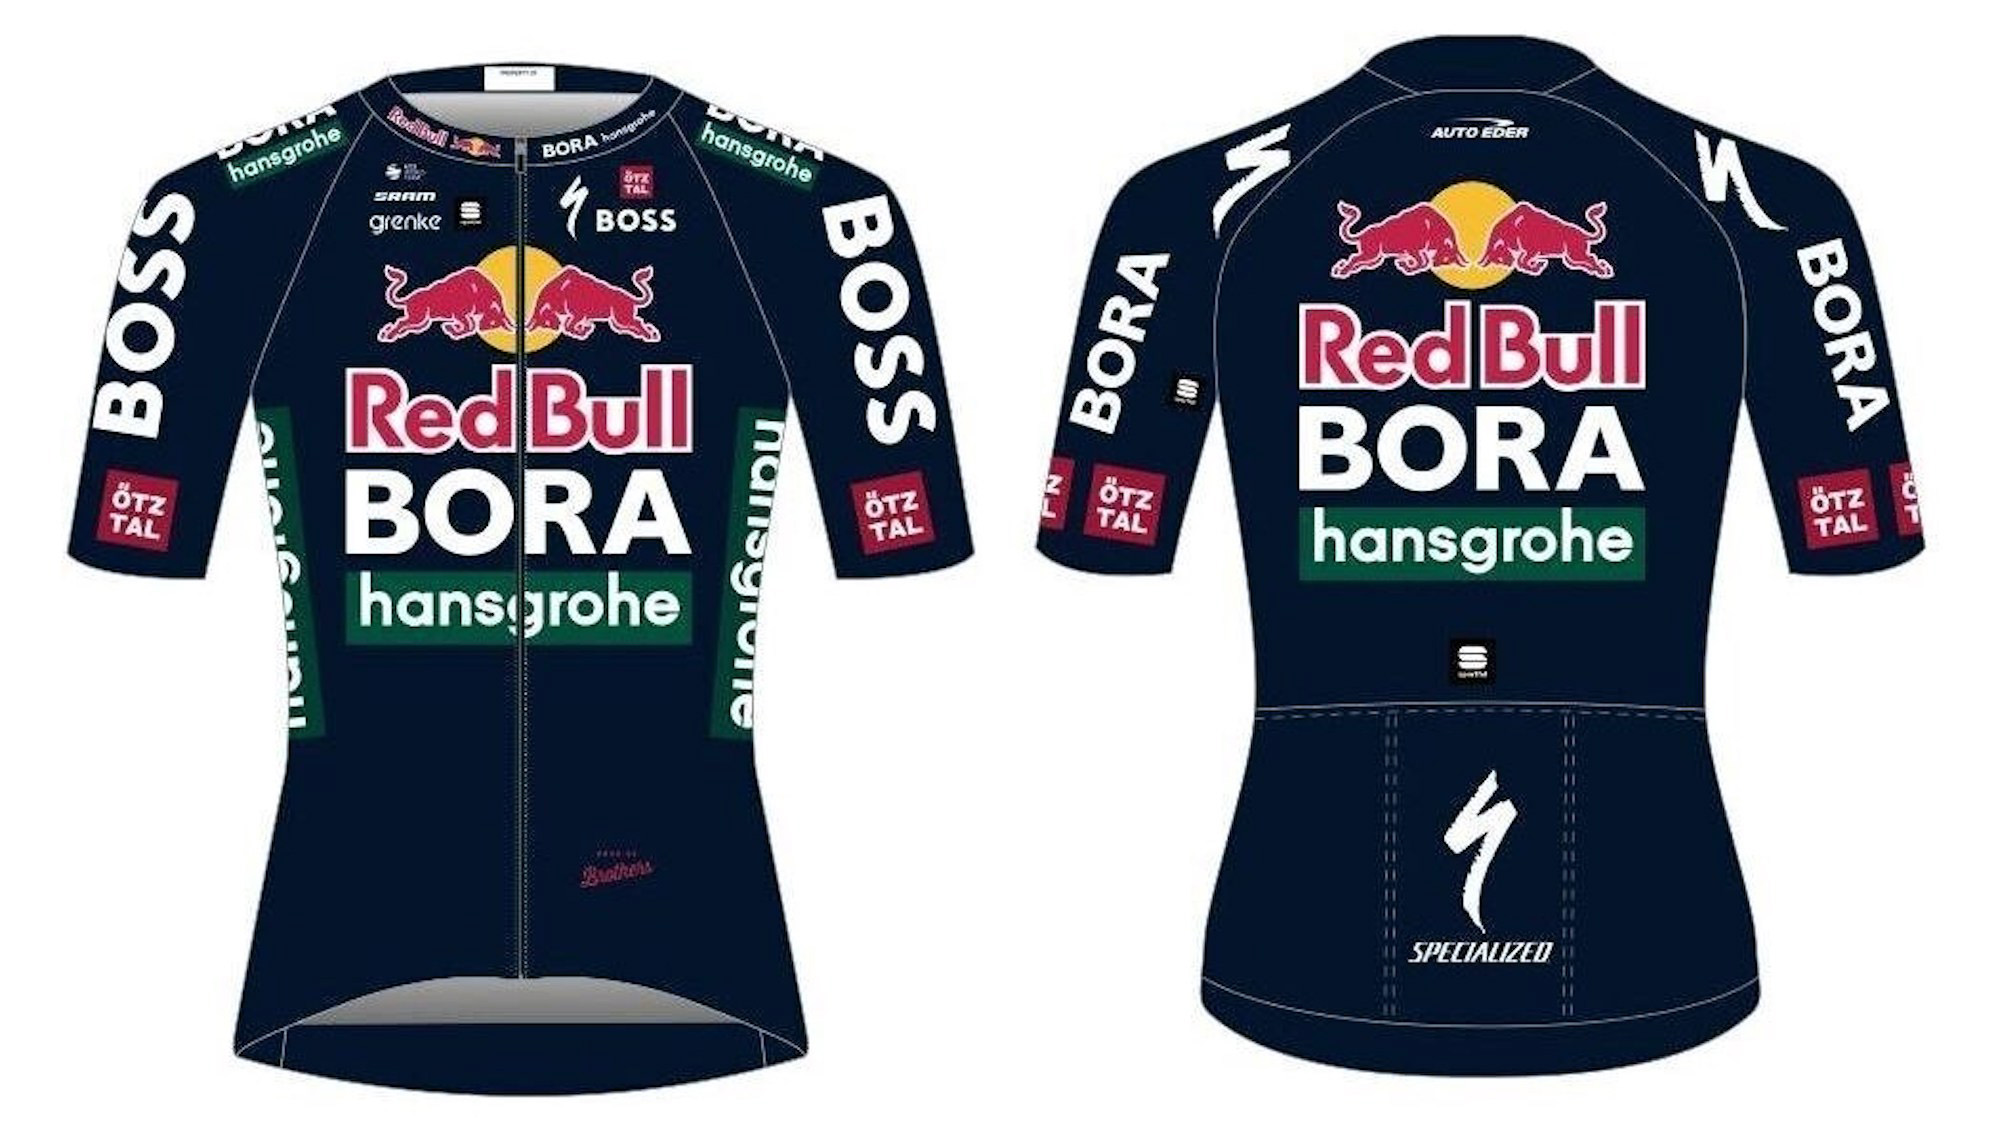 The rumoured new Red Bull Bora Hansgrohe kit.